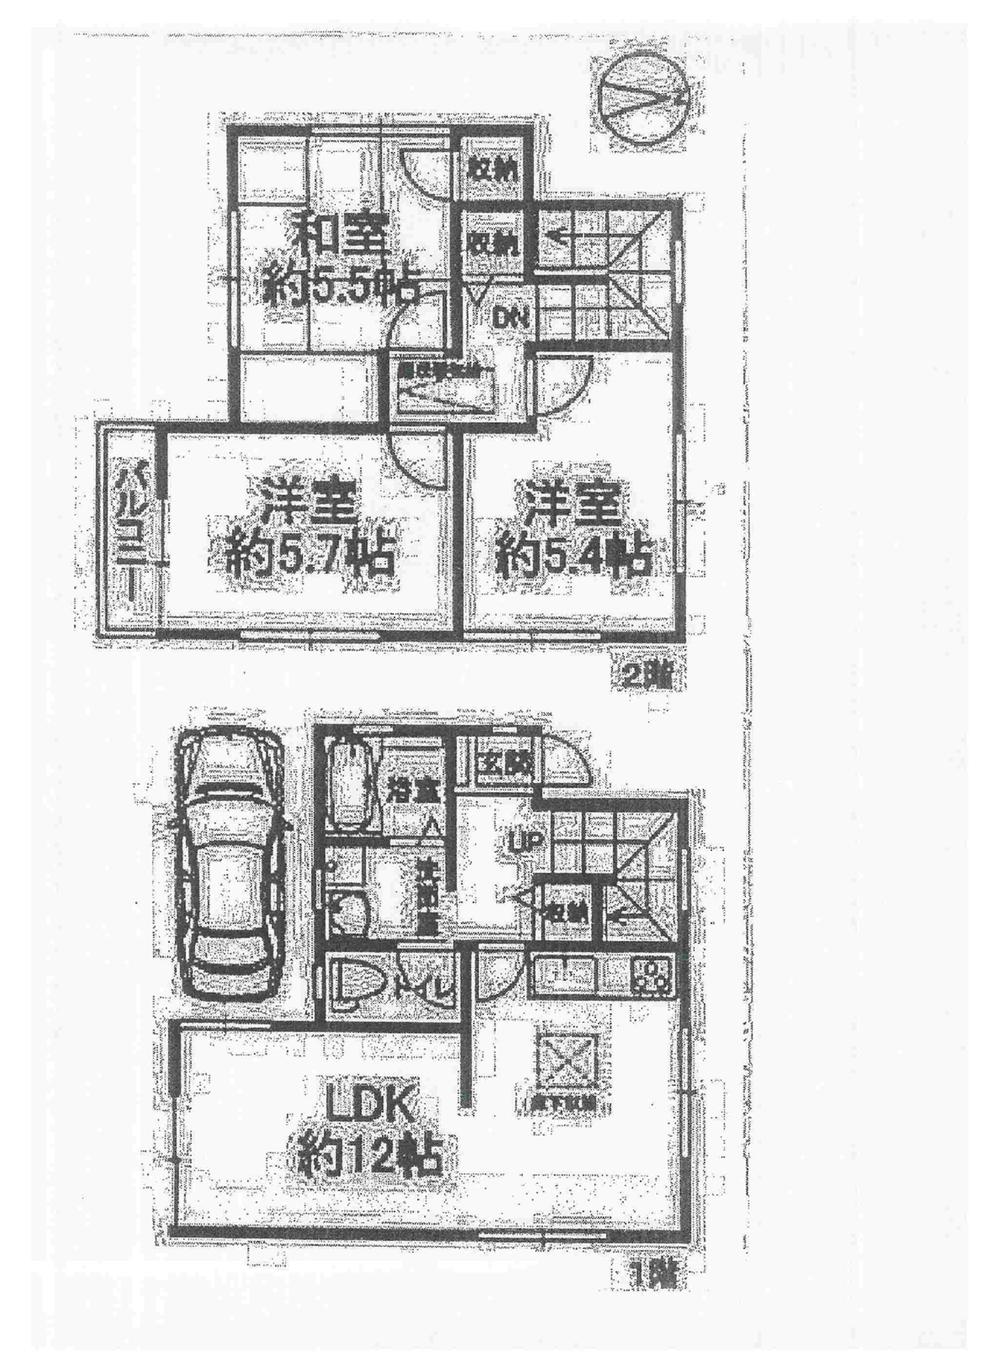 Floor plan. 17.5 million yen, 3LDK, Land area 61.75 sq m , Building area 68.95 sq m